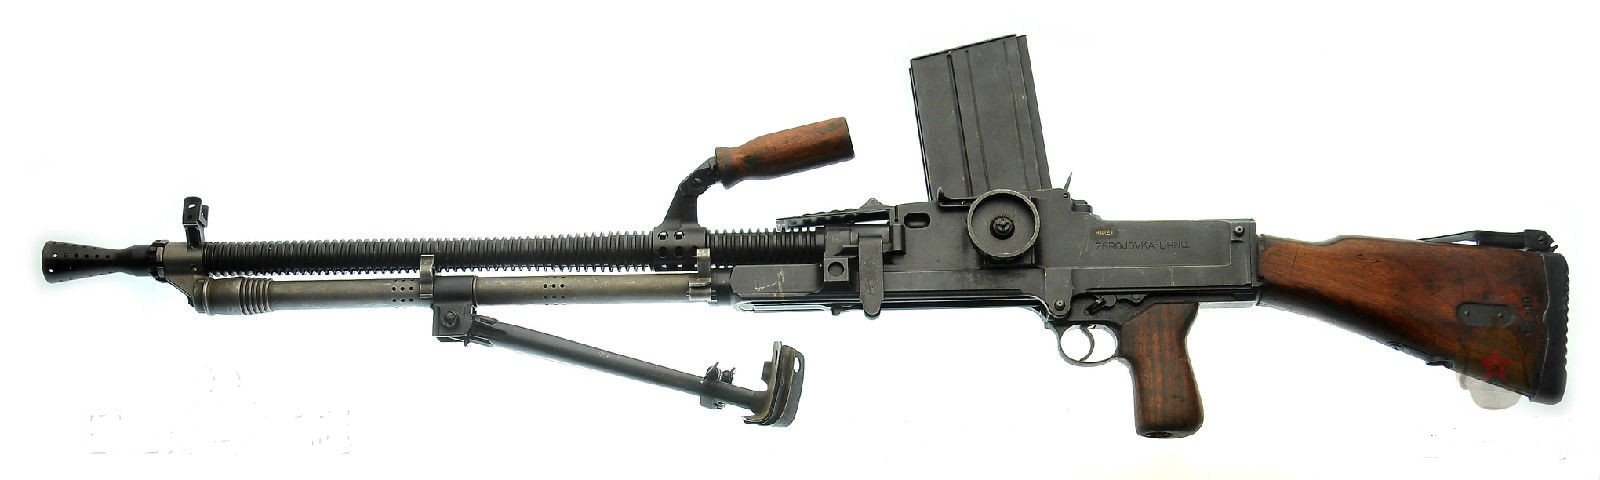 捷克式机枪和歪把子_捷克式轻机枪有效射程_捷克式机枪1/6模型